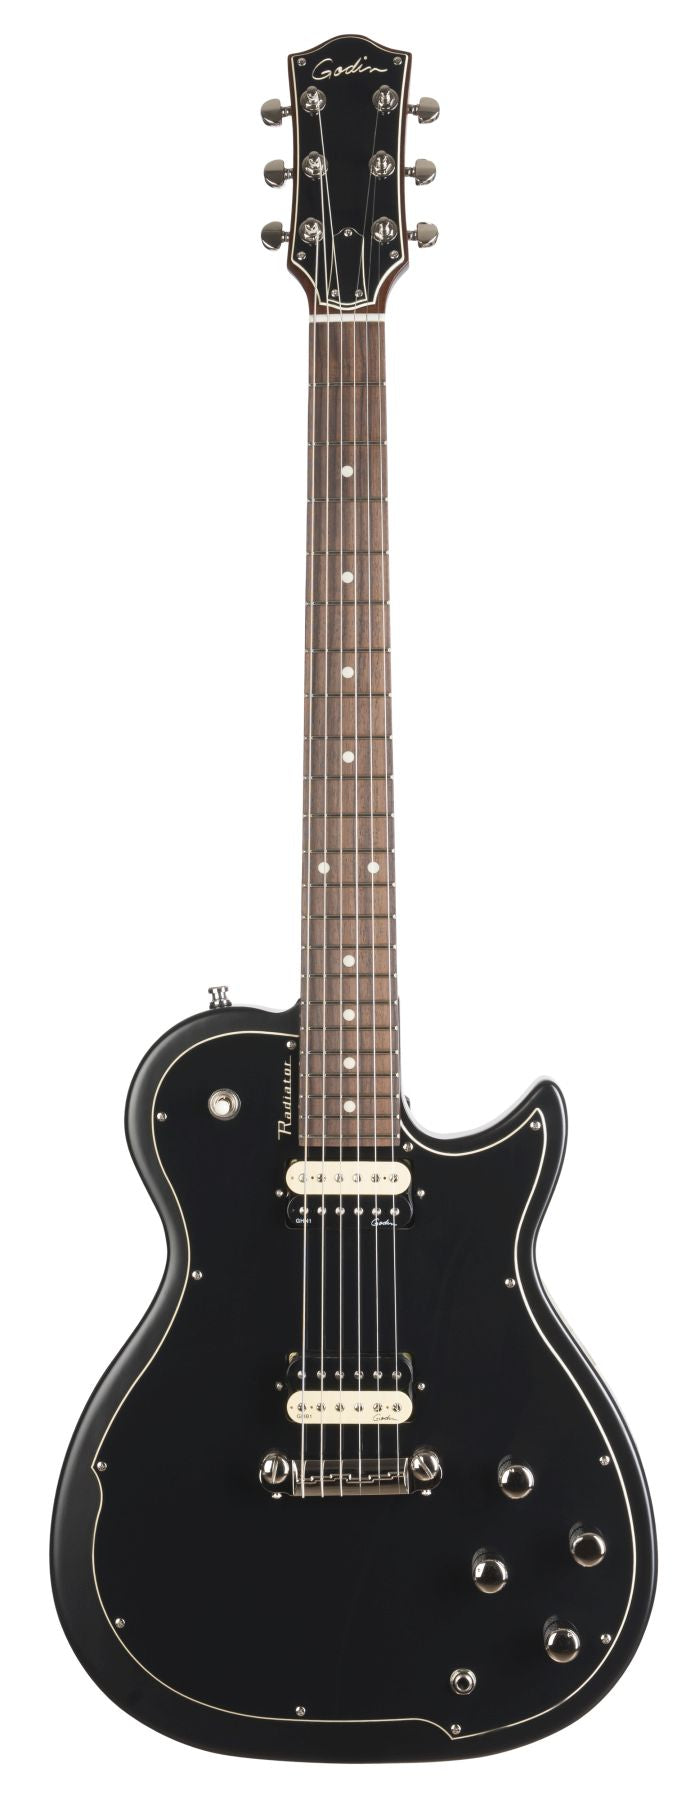 Godin 048472 Radiator Matte Black RN Electric Guitar Made In Canada